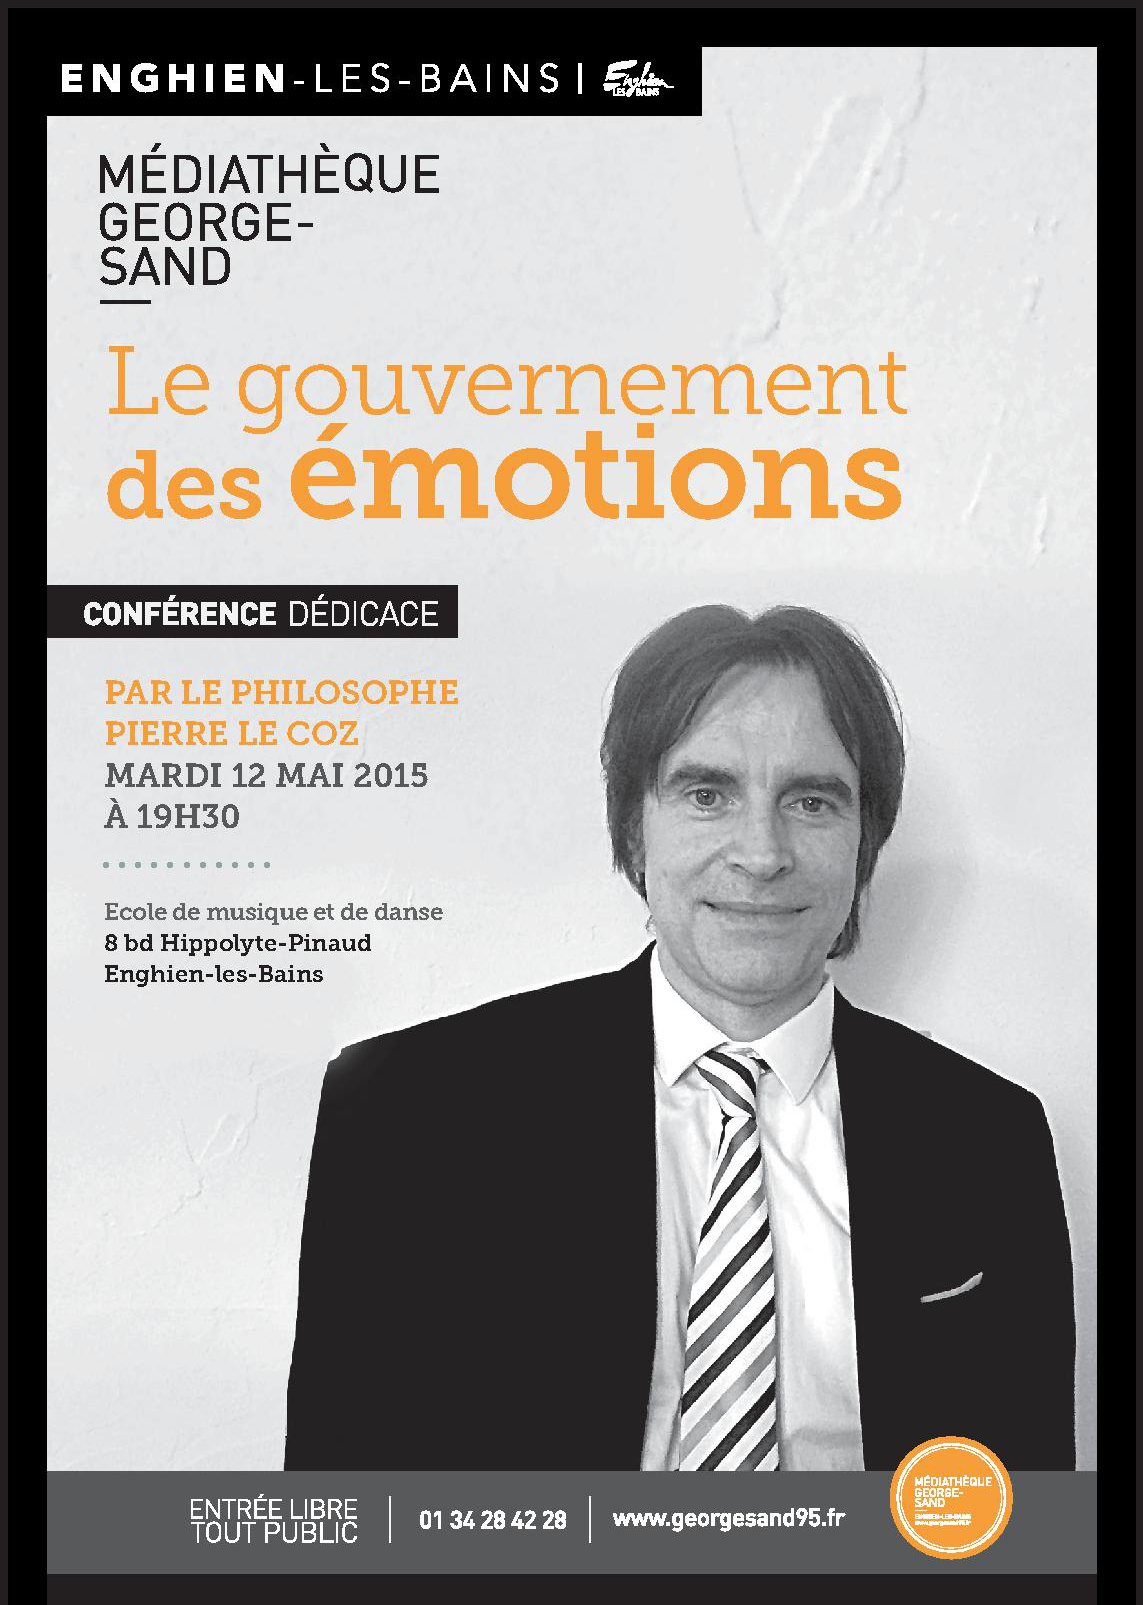 conférence de Pierre Le Coz - enghien - 12 mai 2015